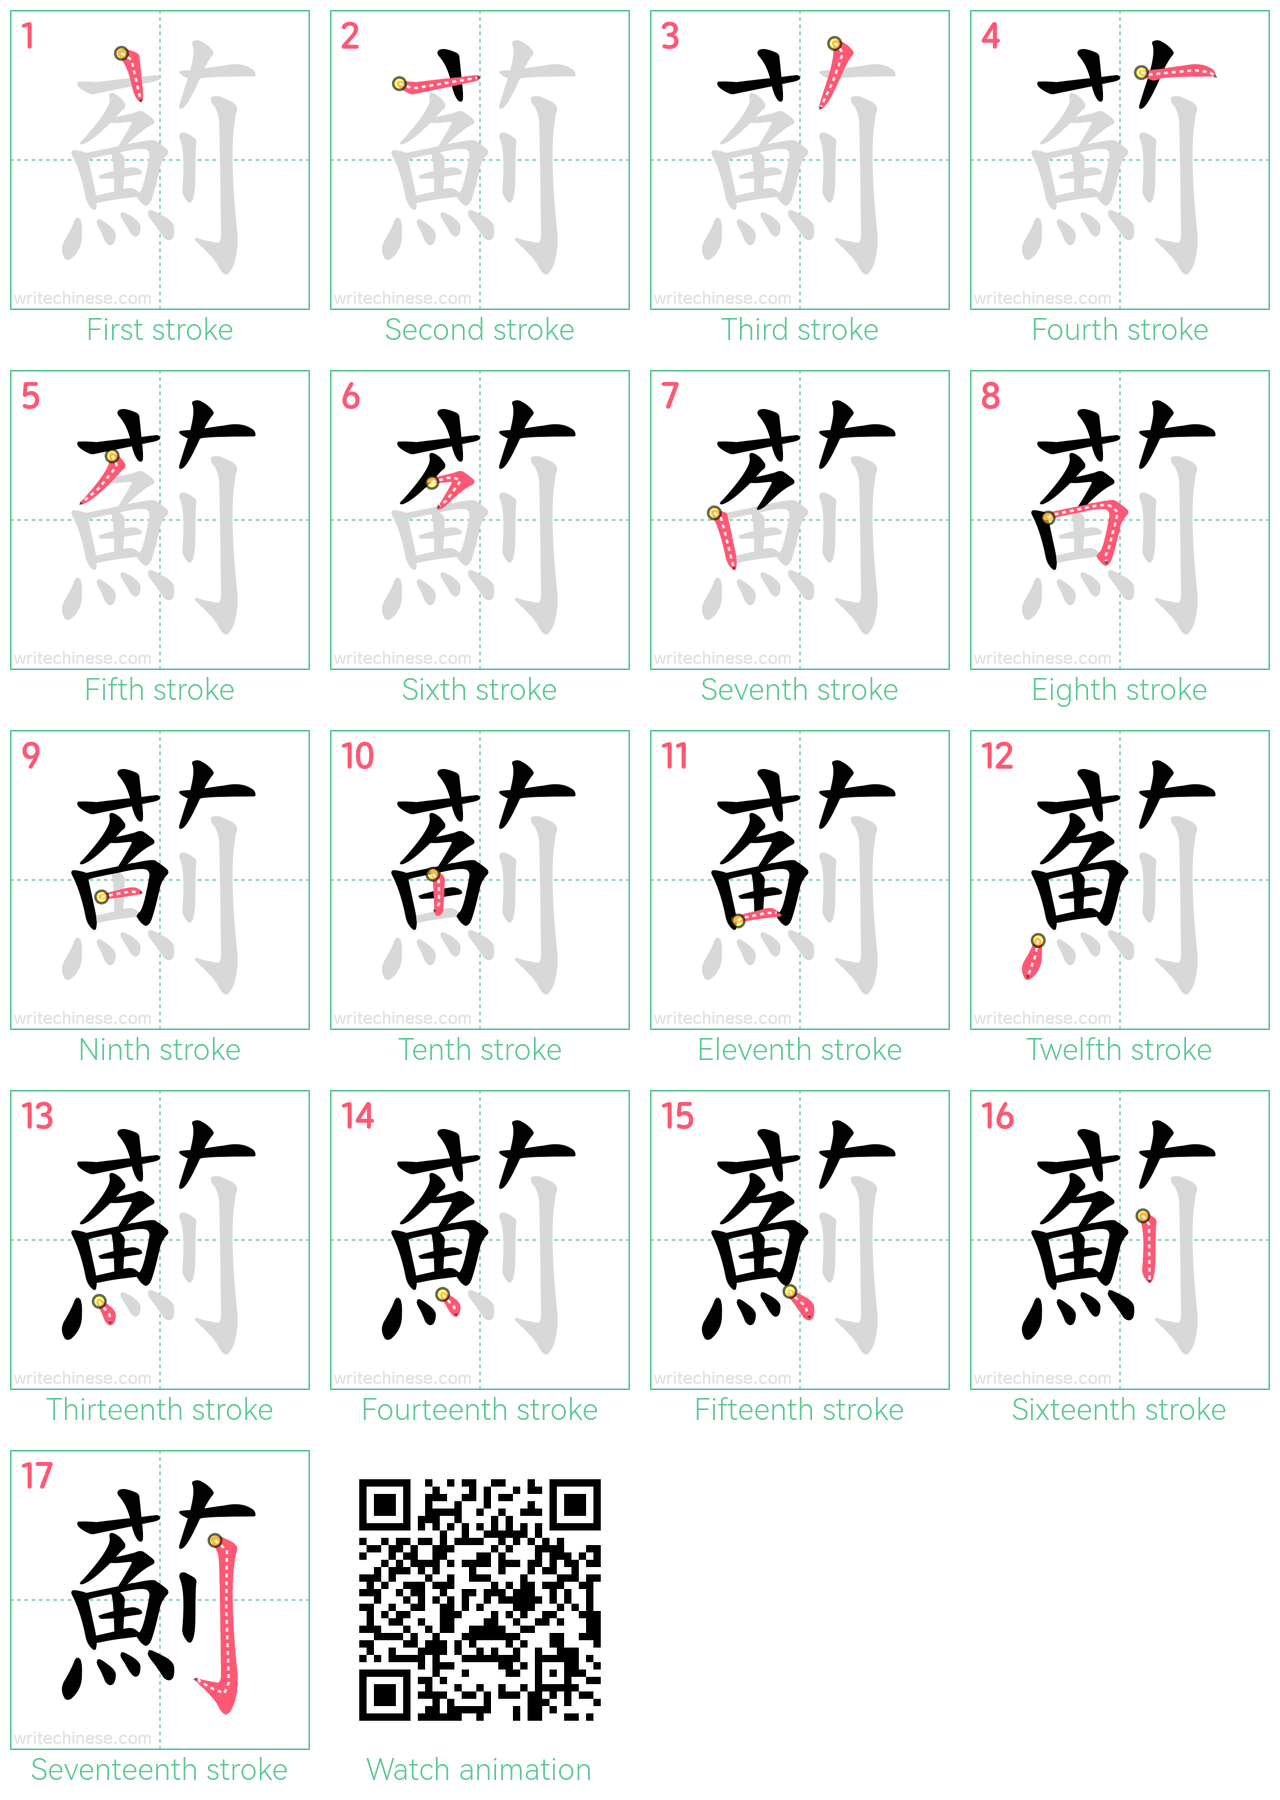 薊 step-by-step stroke order diagrams